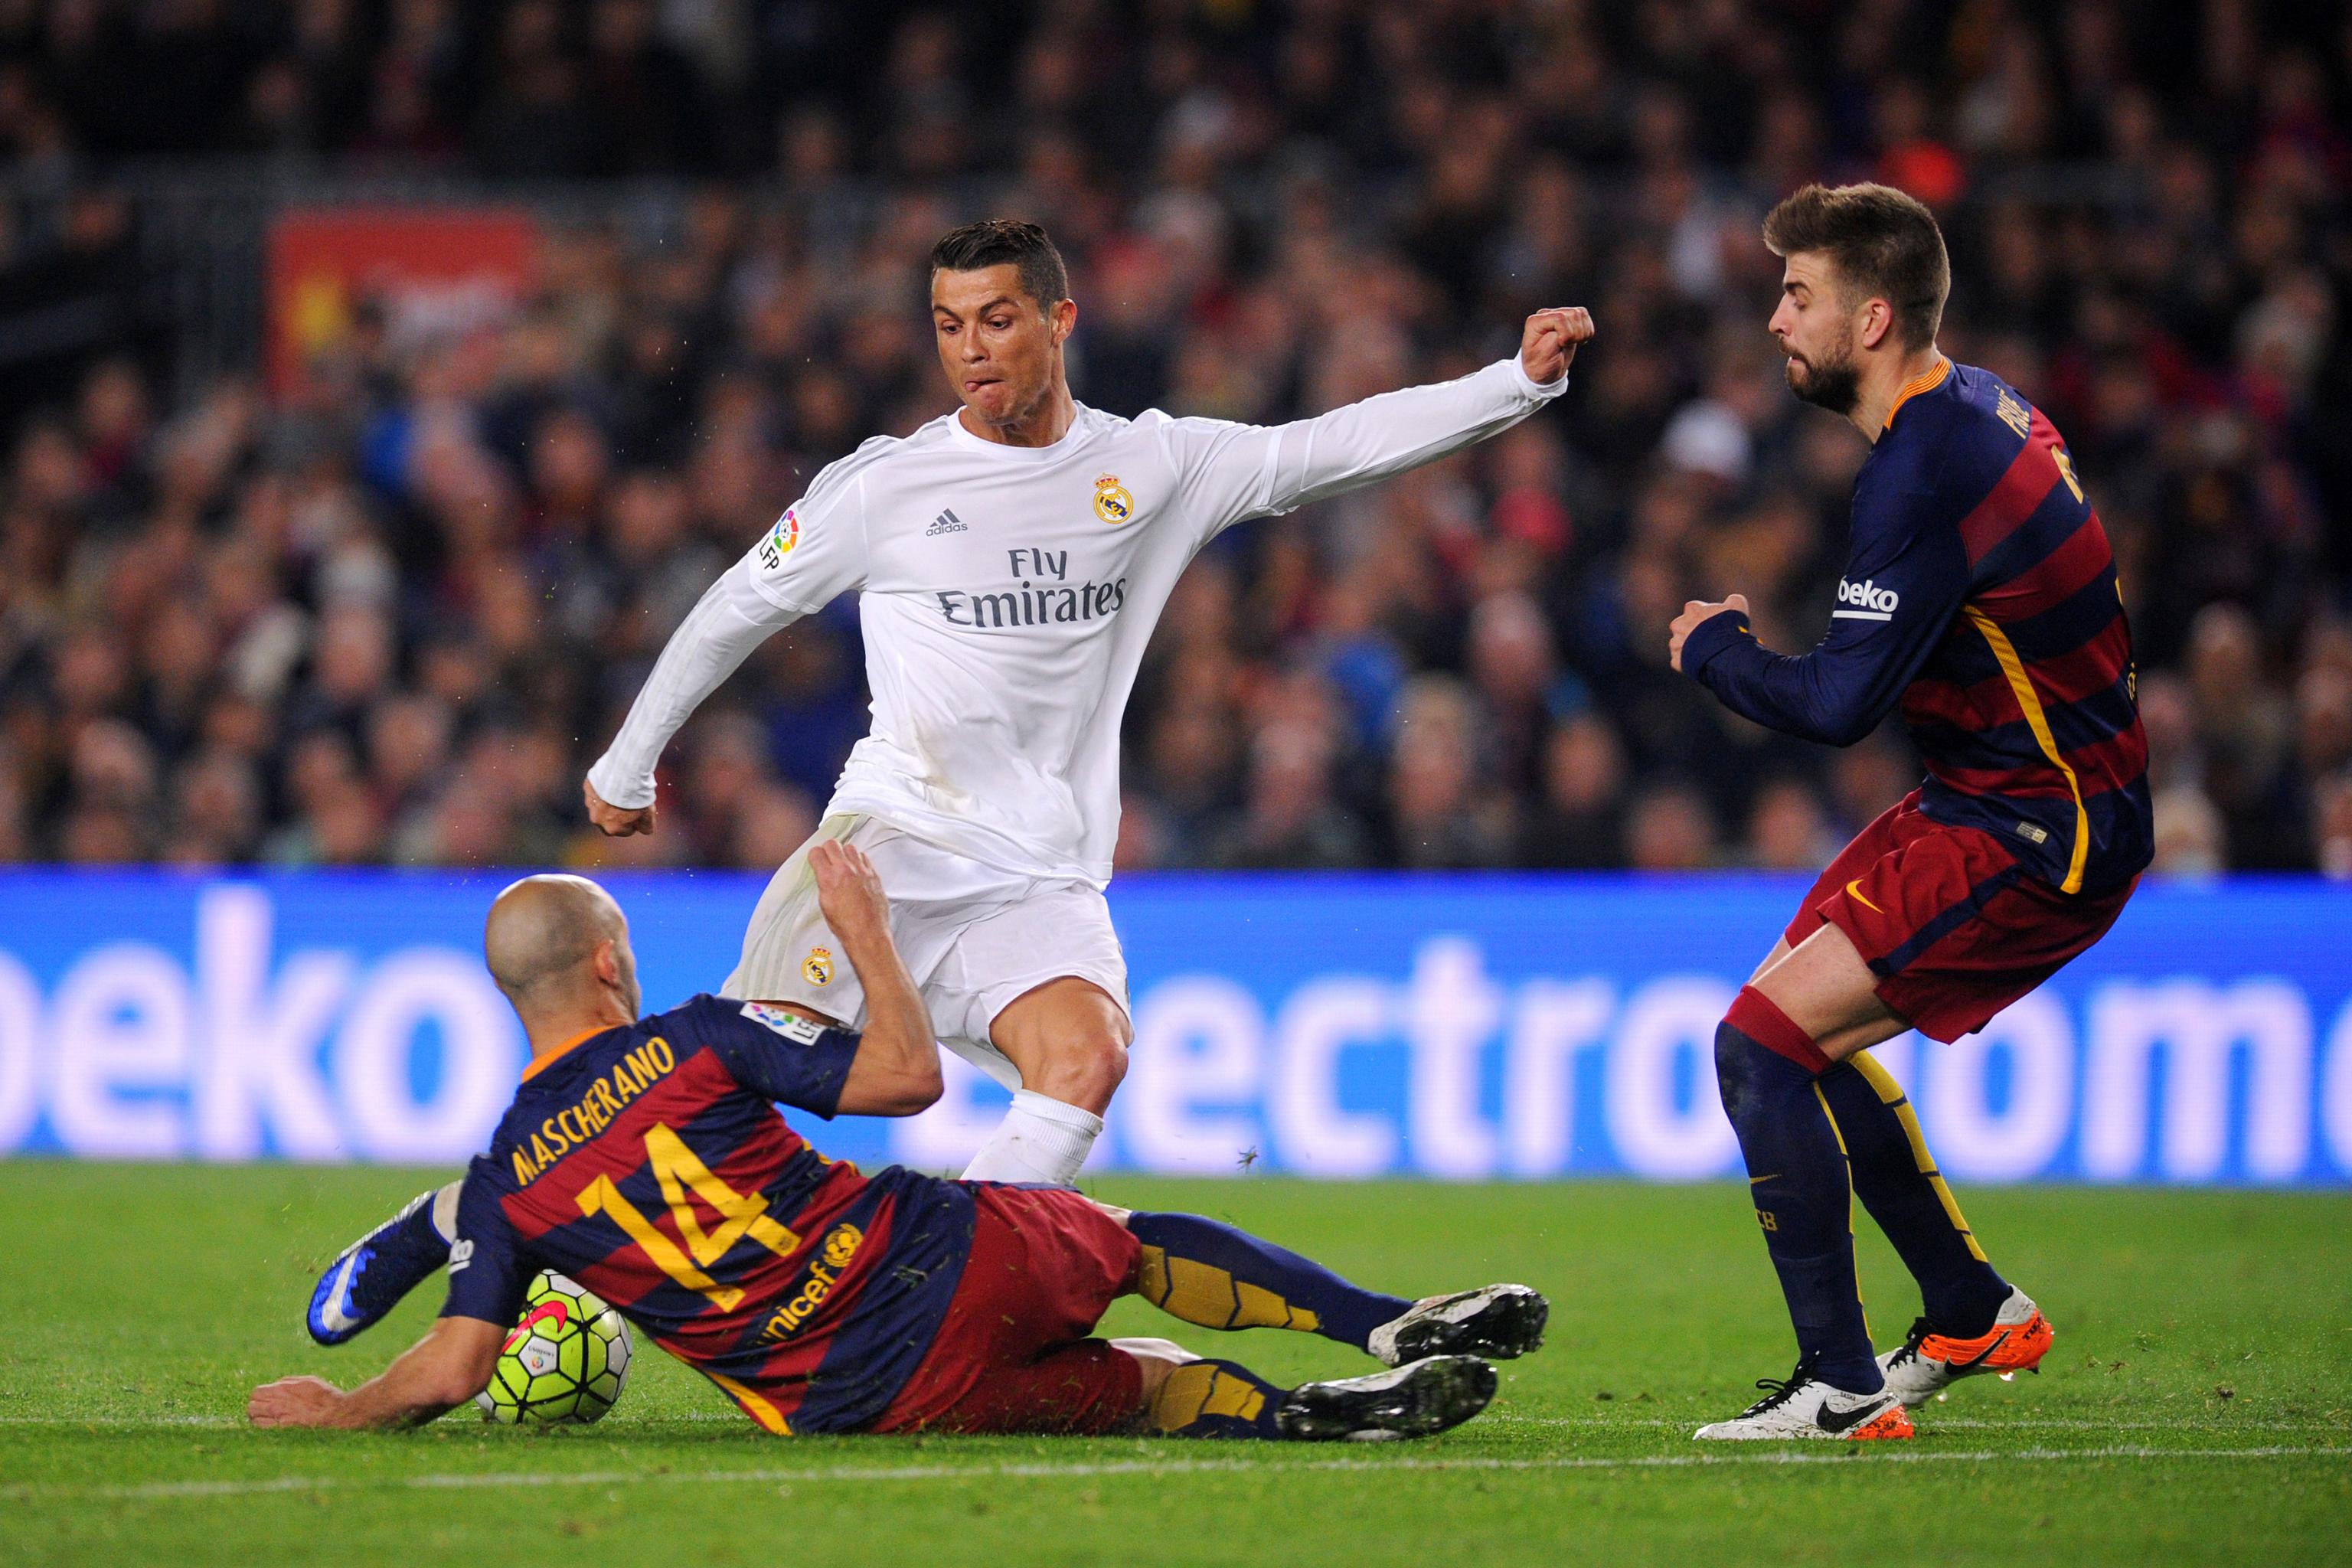 Messi vs Ronaldo in El Clasico (2015) - Messi vs Ronaldo